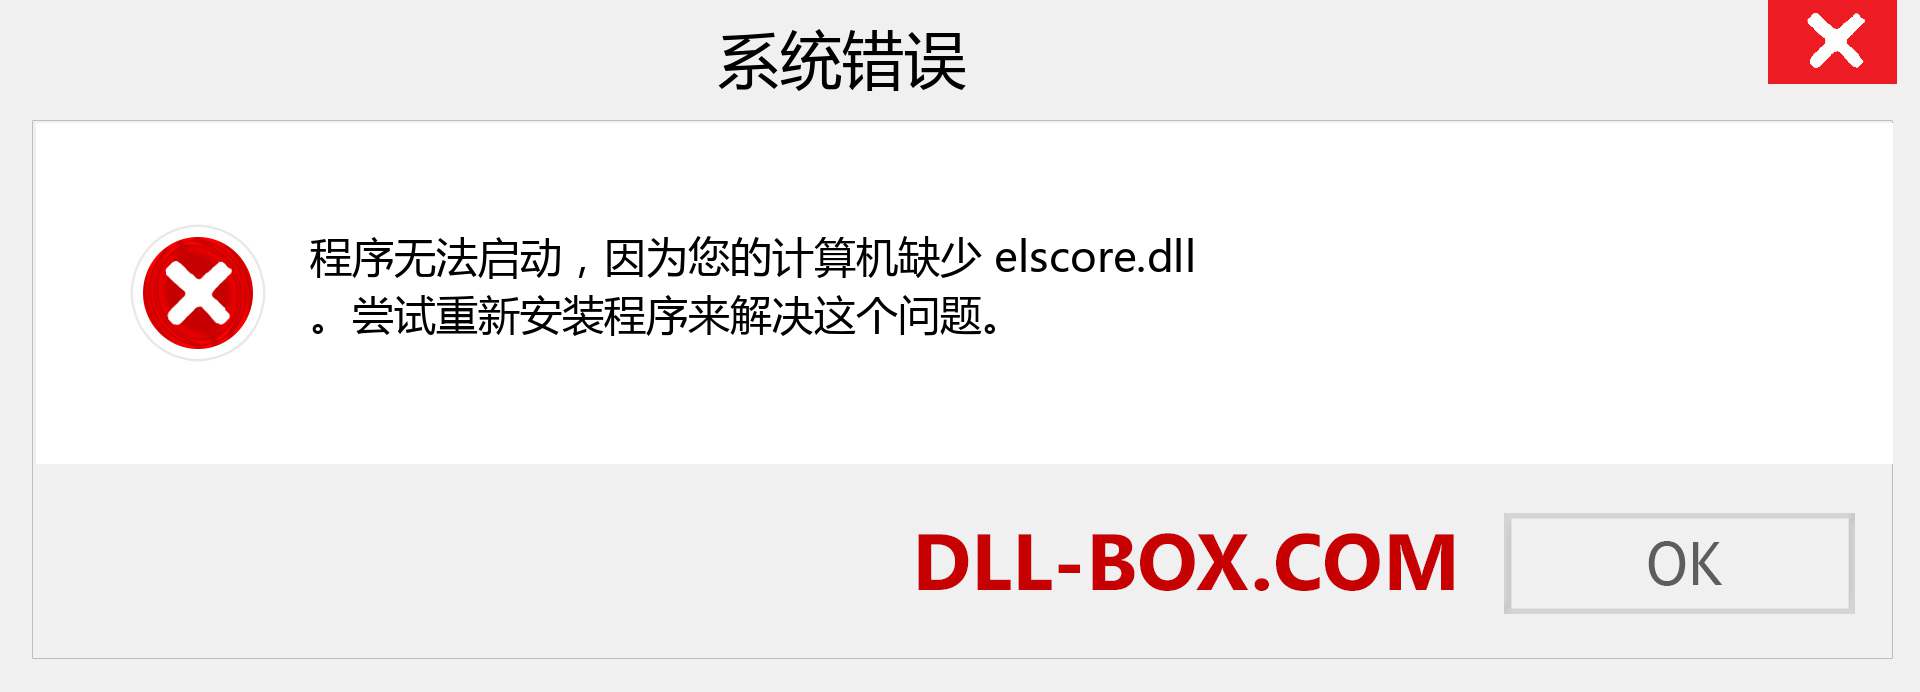 elscore.dll 文件丢失？。 适用于 Windows 7、8、10 的下载 - 修复 Windows、照片、图像上的 elscore dll 丢失错误